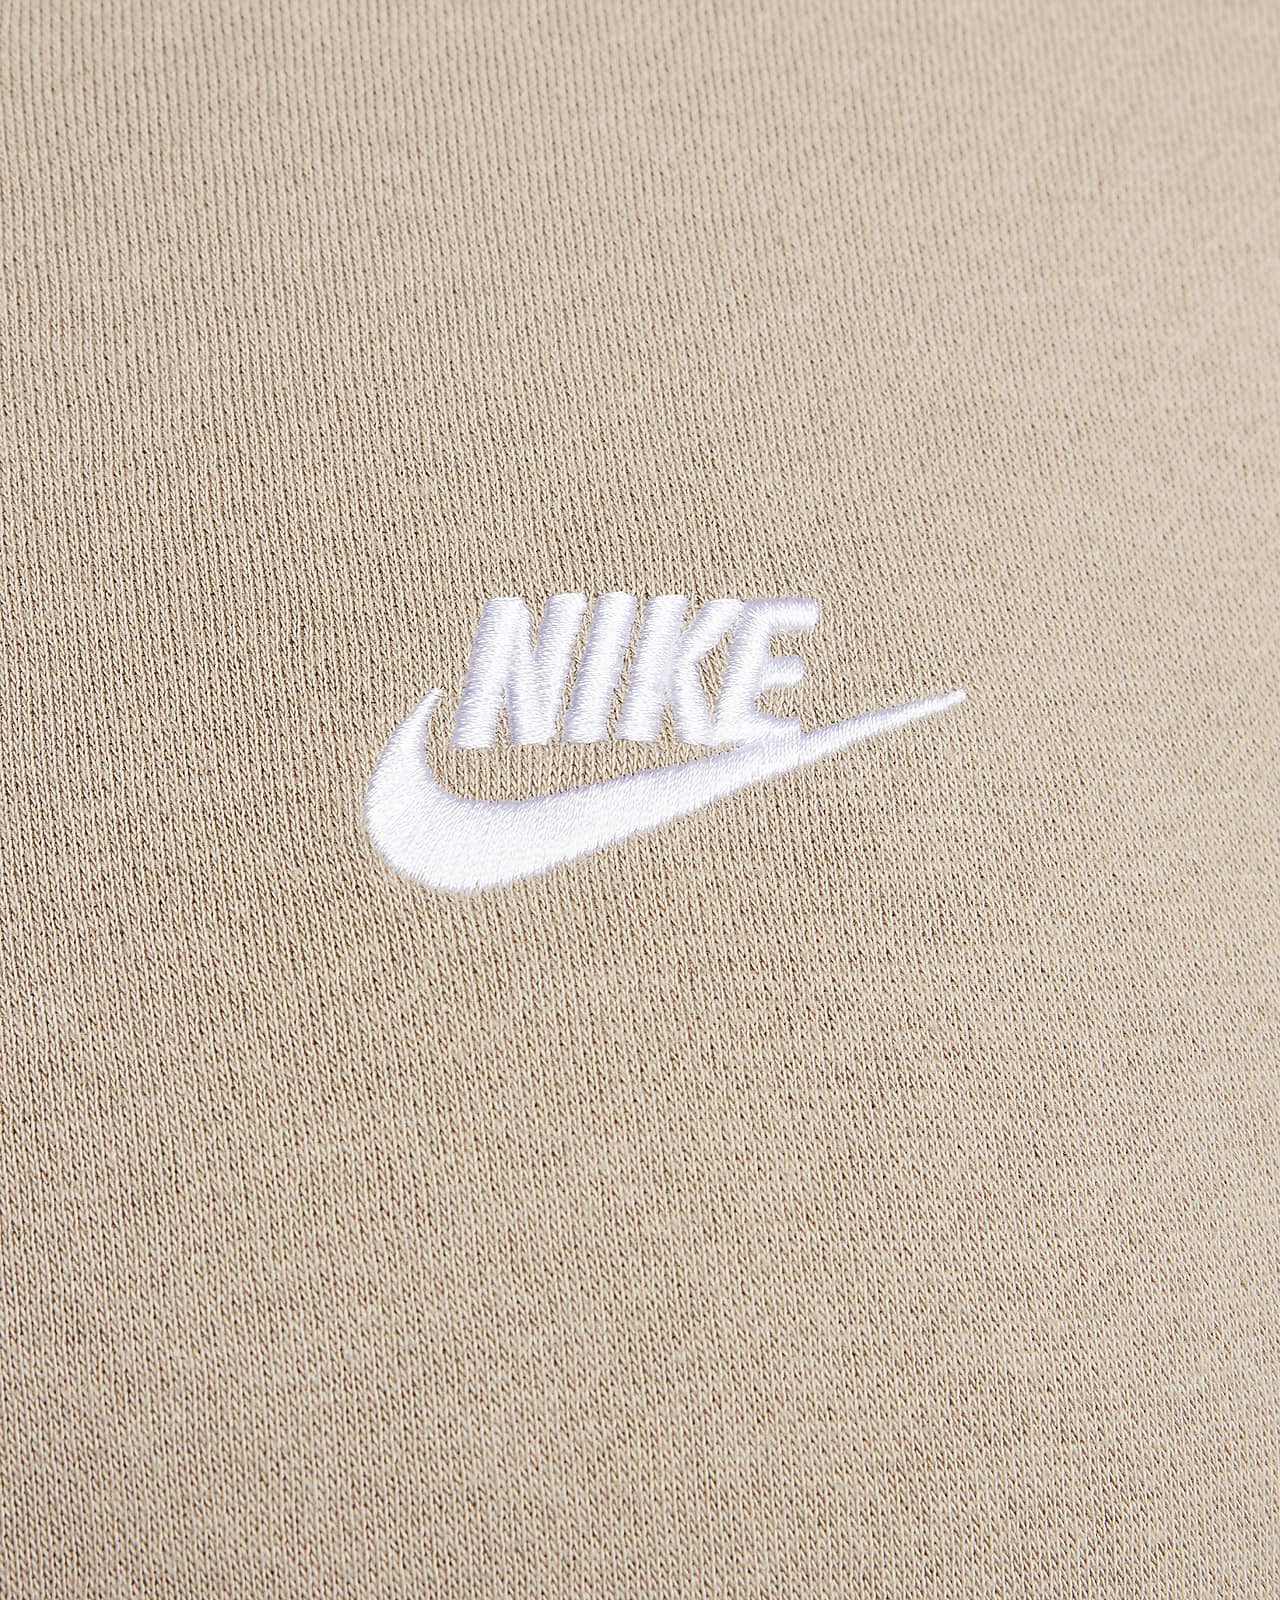 Nike Club Winter 1/2 zip fleece sweatshirt with contrast pocket in brown